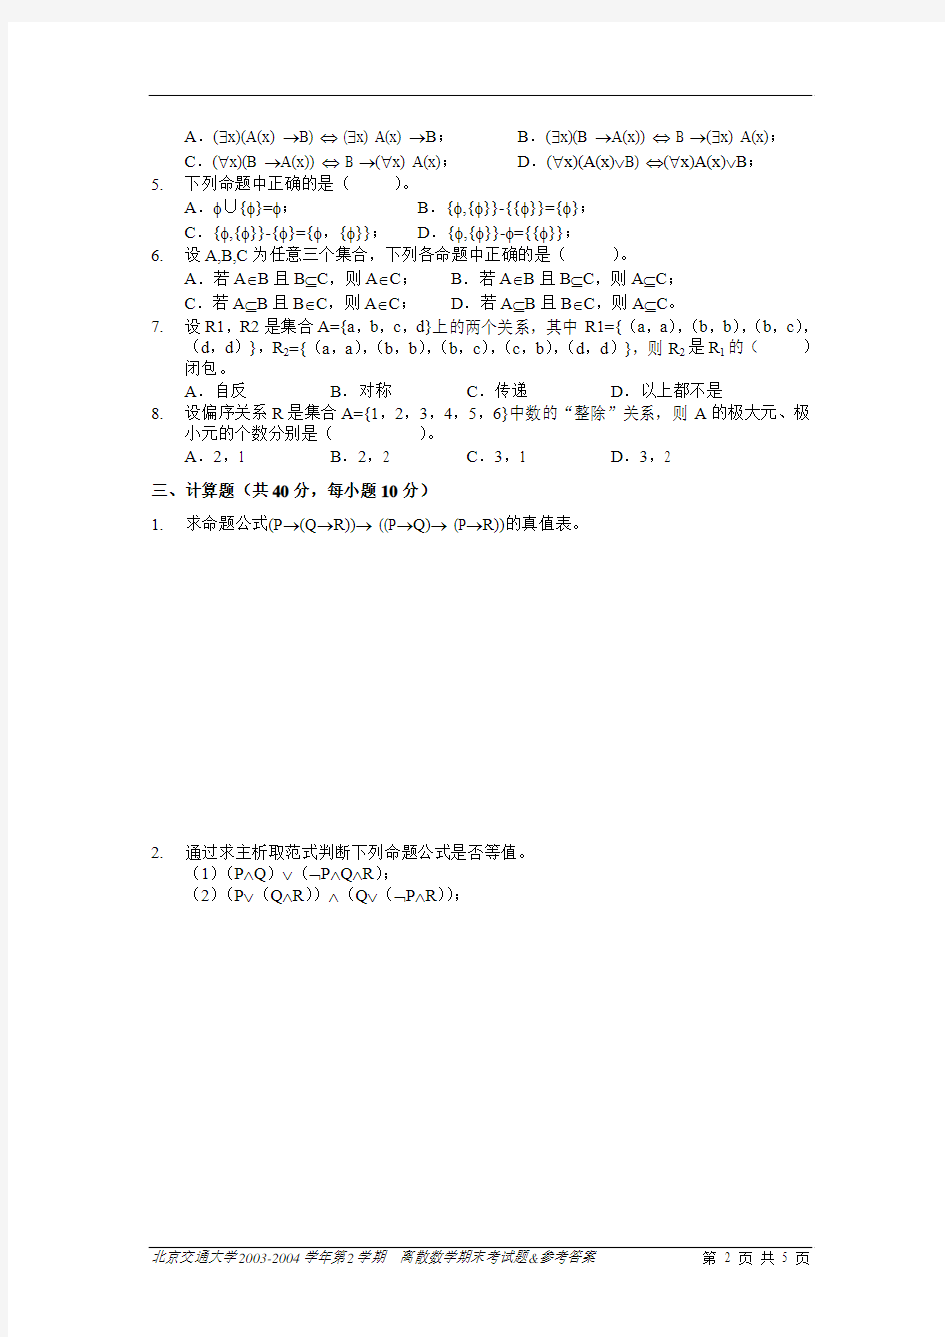 北京交通大学离散数学期末考试题-05-06-1-A-公选-试卷